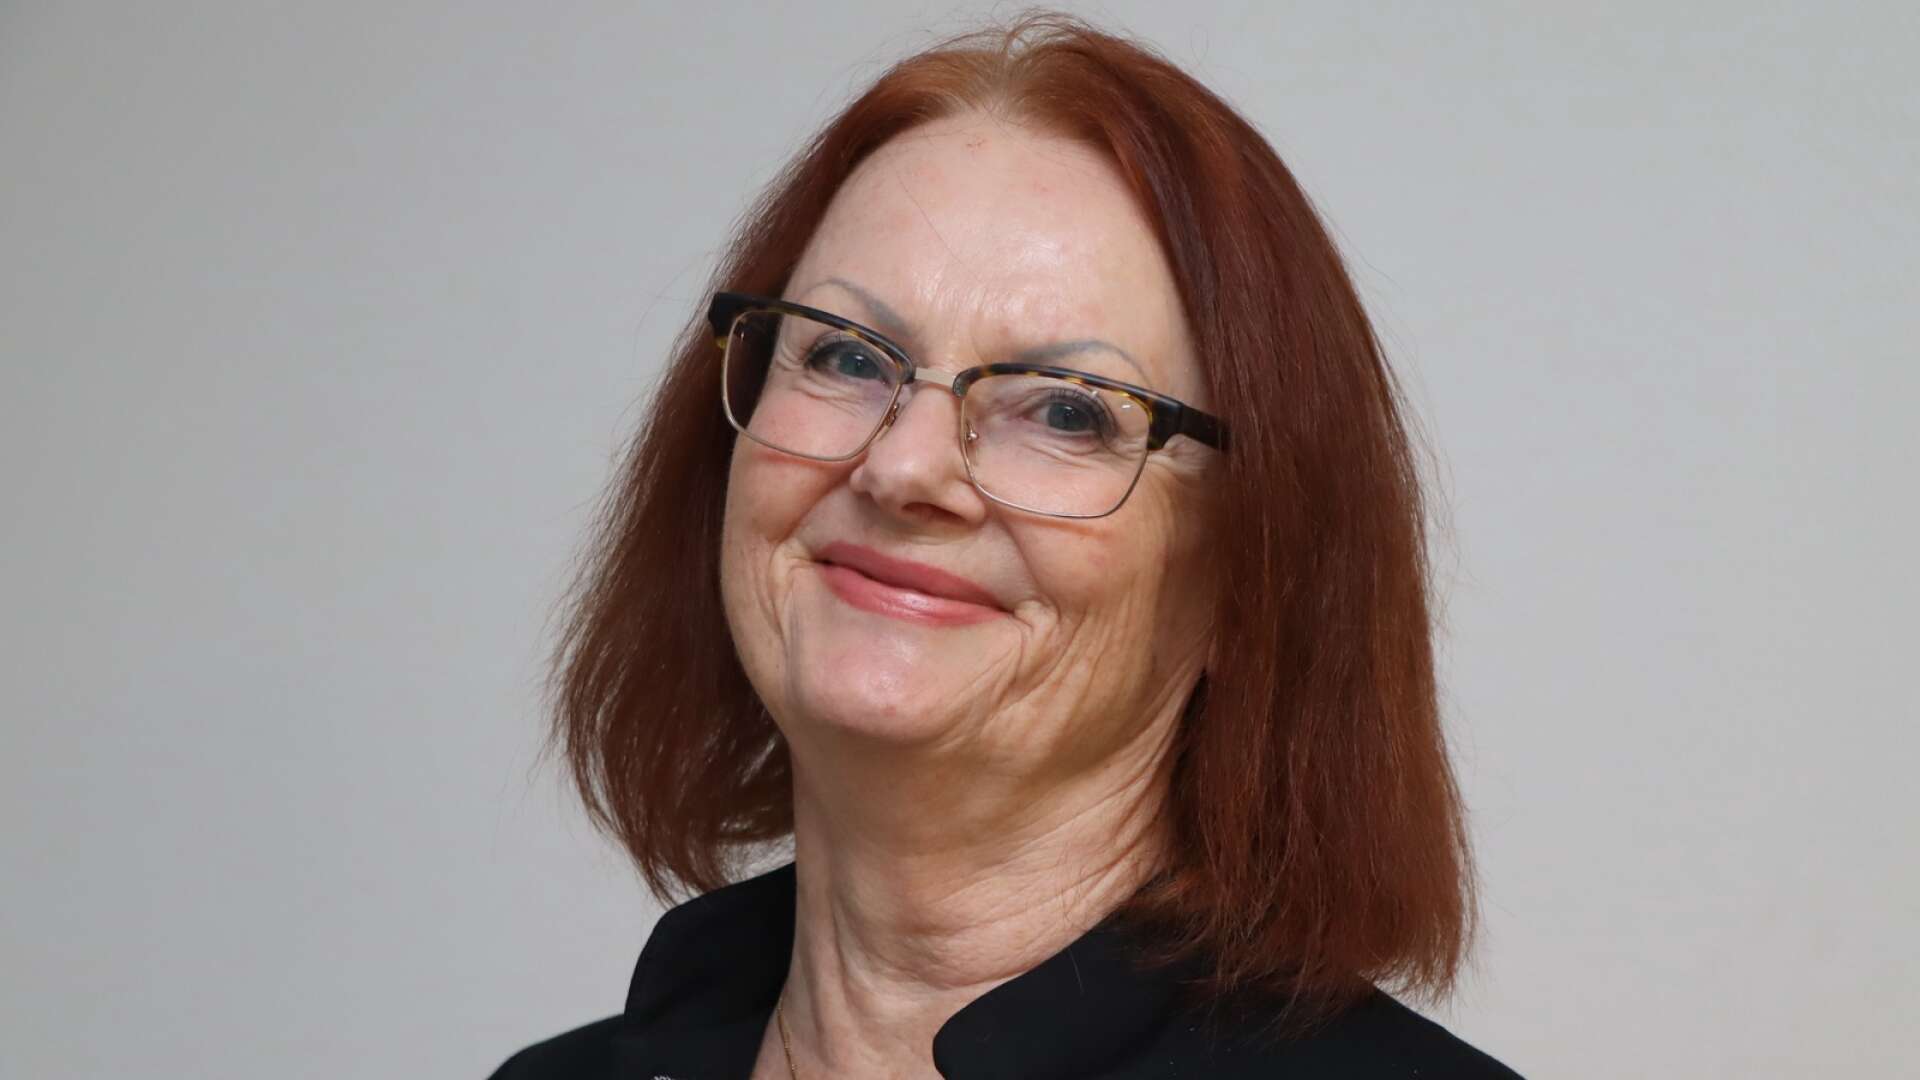 Kristina Grönwalls Bengtsson blev medlem i Kristdemokraterna i somras. Nu ingår hon i styret i Gullspång. Tidigare har hon varit aktiv som politiker för Liberalerna i Västerås.